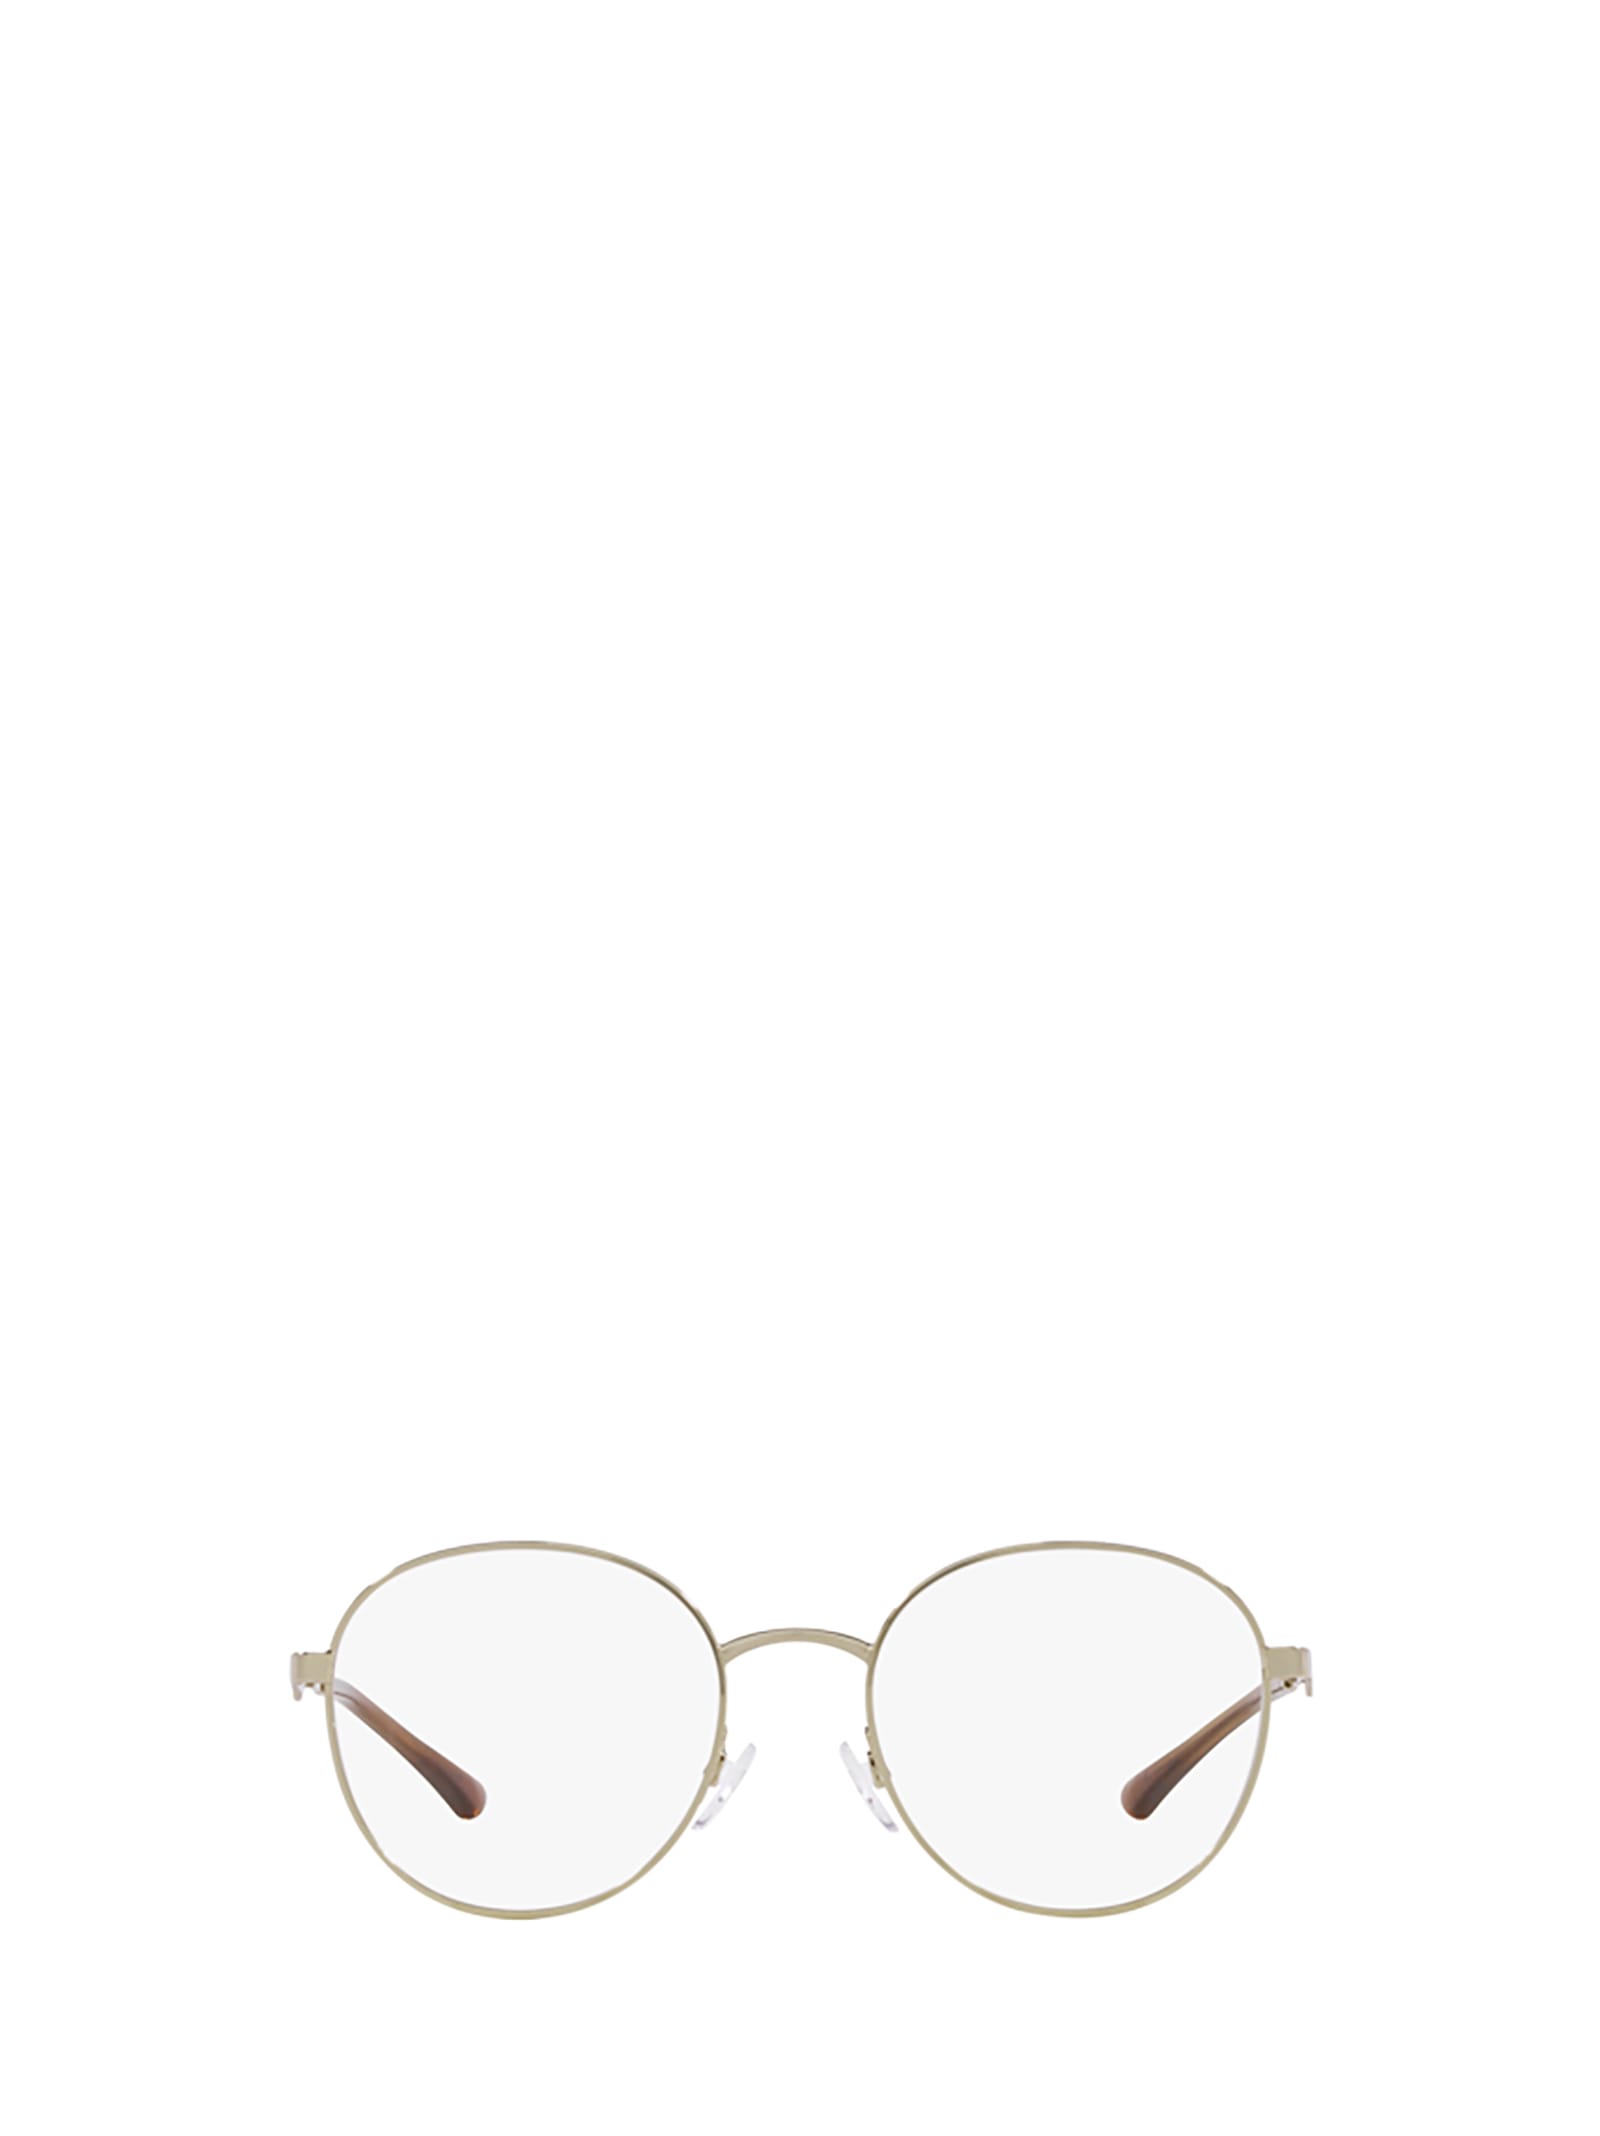 Emporio Armani Ea1144 Shiny Pale Gold Glasses